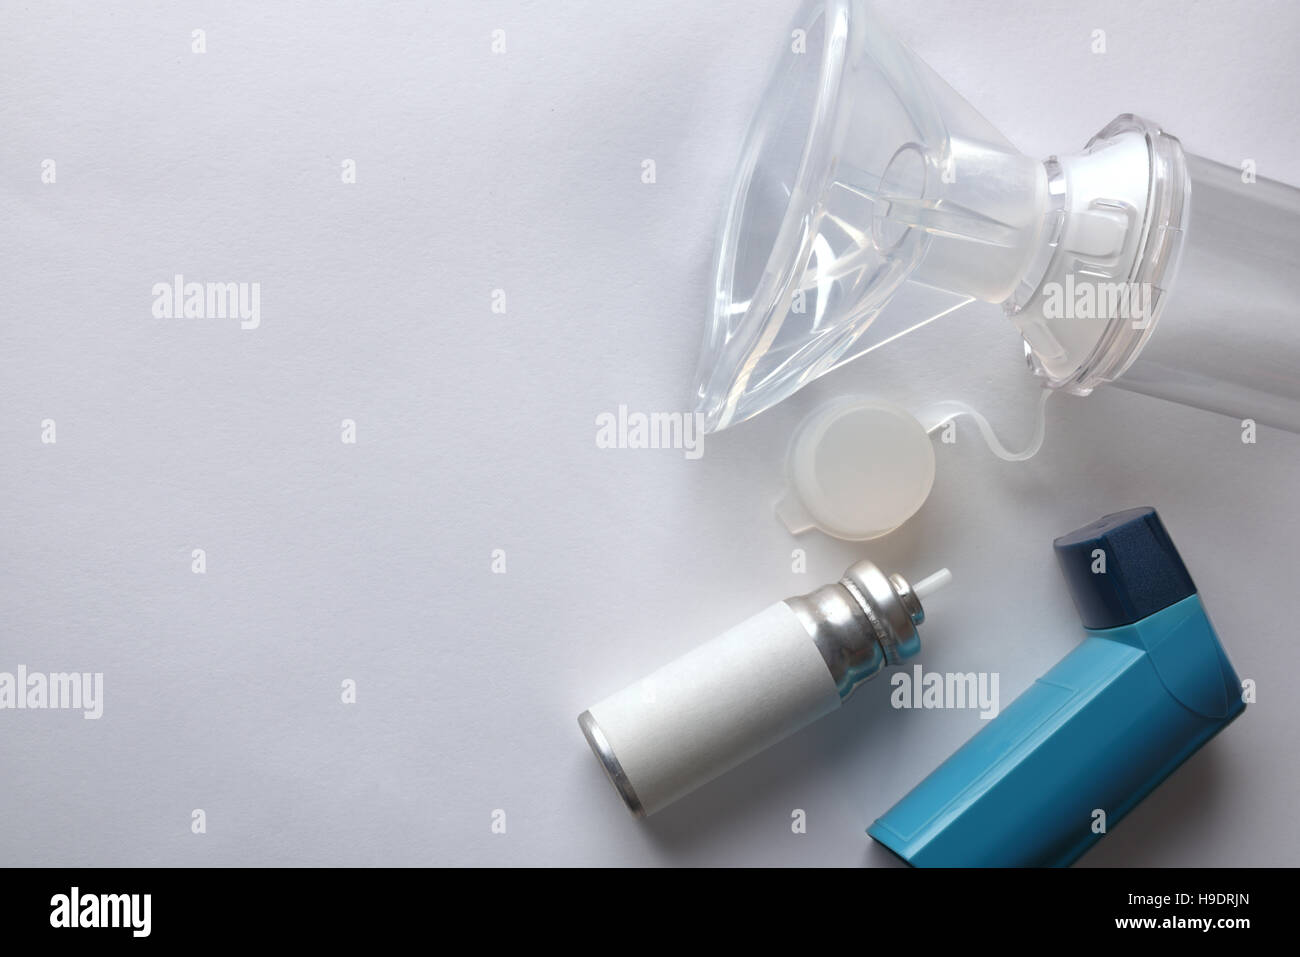 Patrone und blau Medizin Inhalator und Inhalation Kammer mit Silikon Maske auf weißen Tisch. Ansicht von oben. Horizontale Komposition Stockfoto